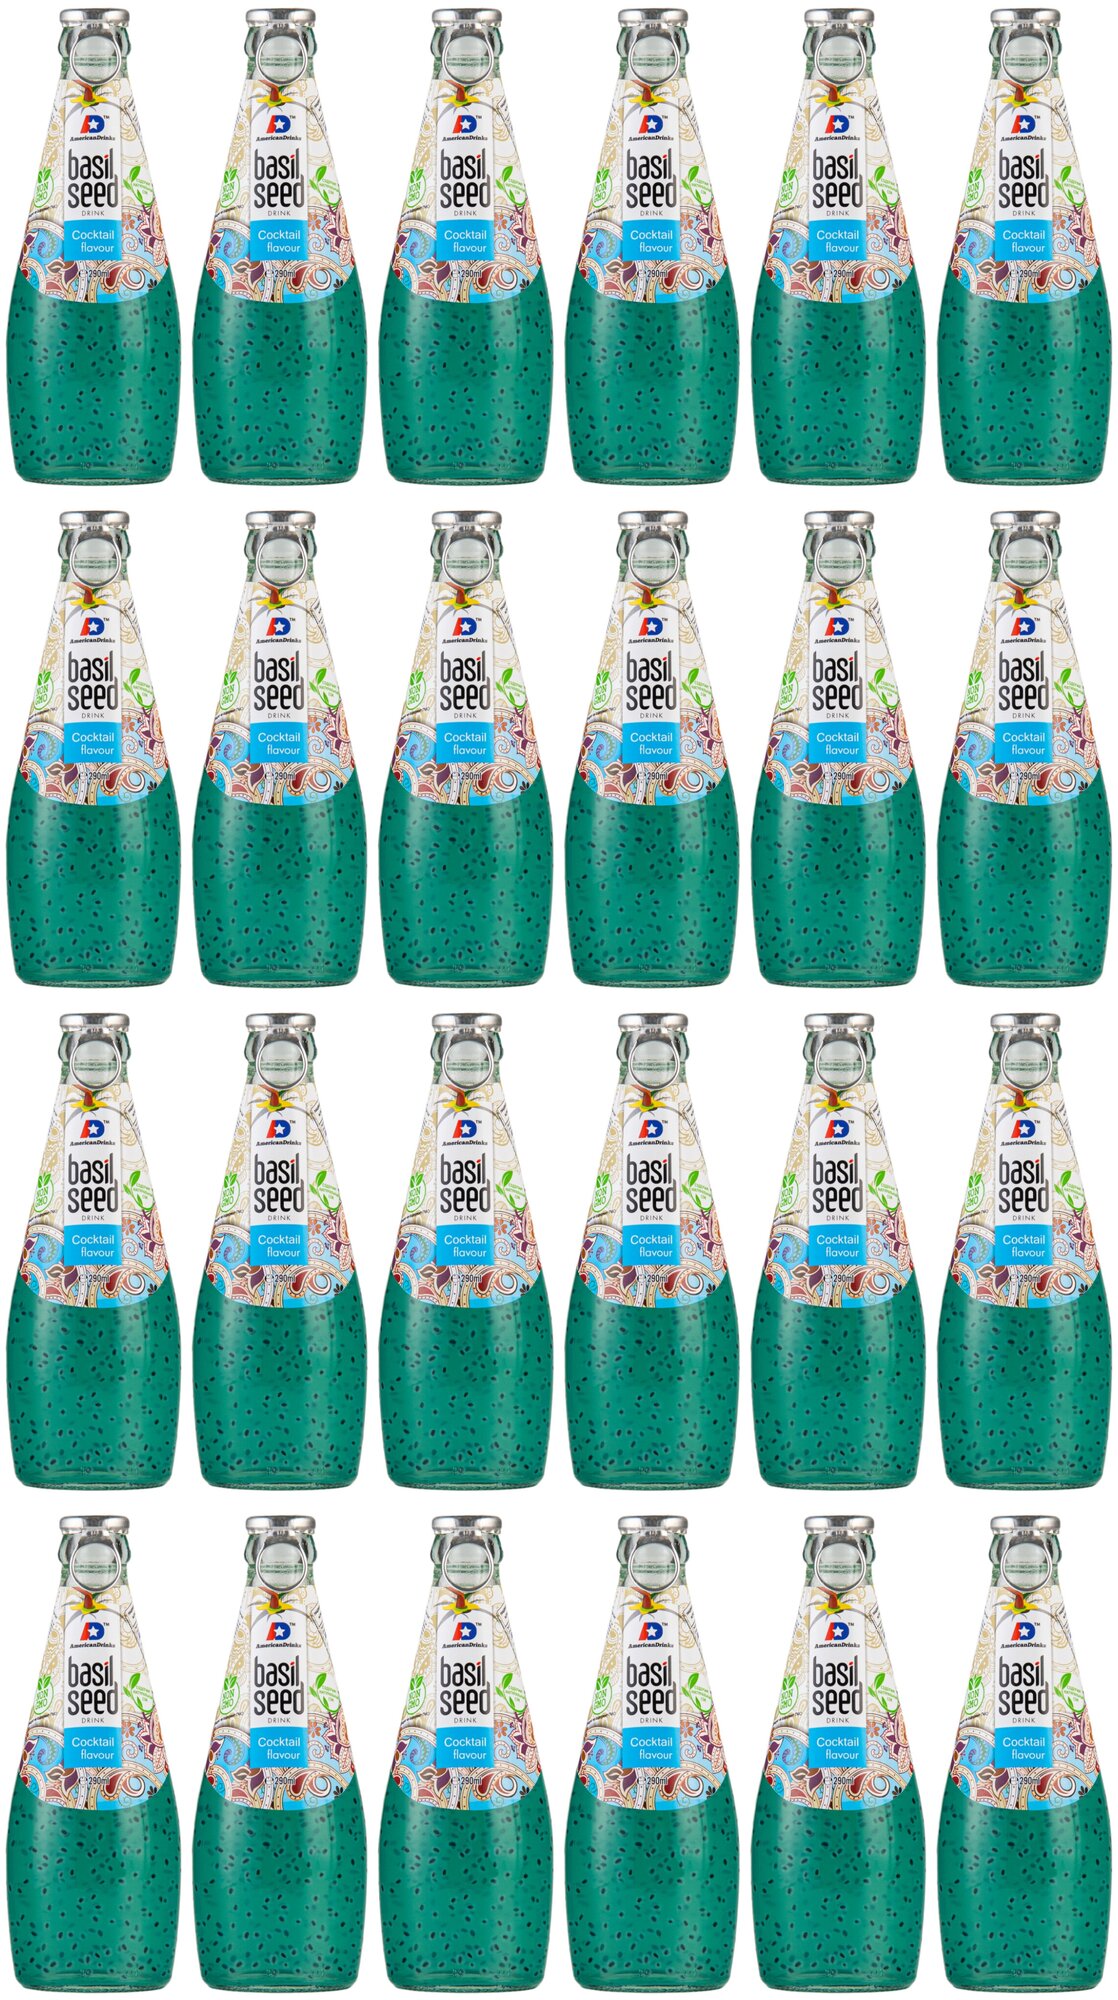 Сокосодержащий напиток American Drinks Basil Seed Cocktail (Экзотический коктейль (Ананас и личи)) стеклянная бутылка 290 мл., упаковка - 24 штуки - фотография № 1